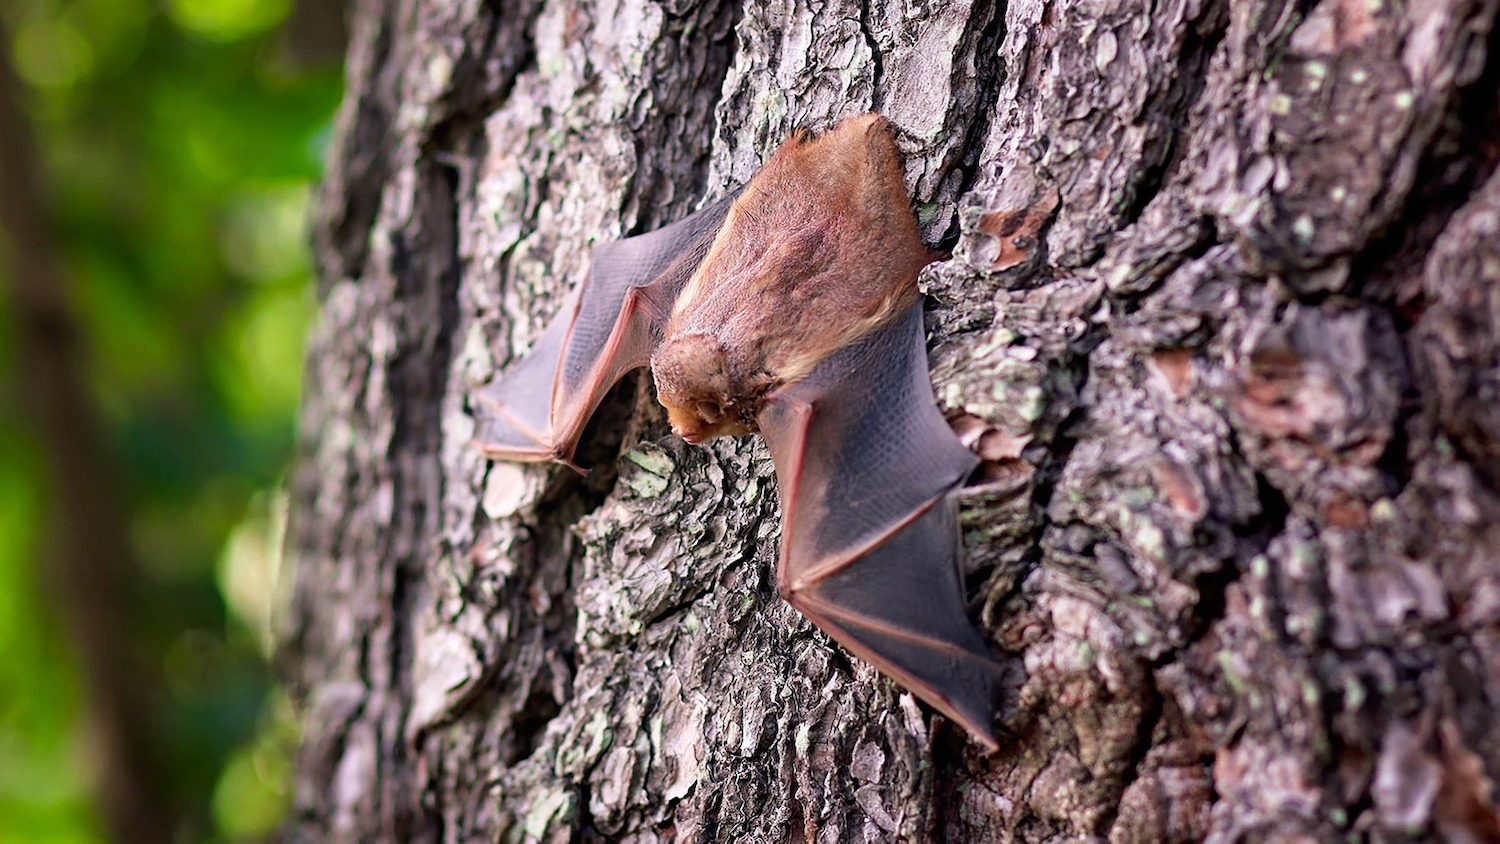 Bat hanging on tree